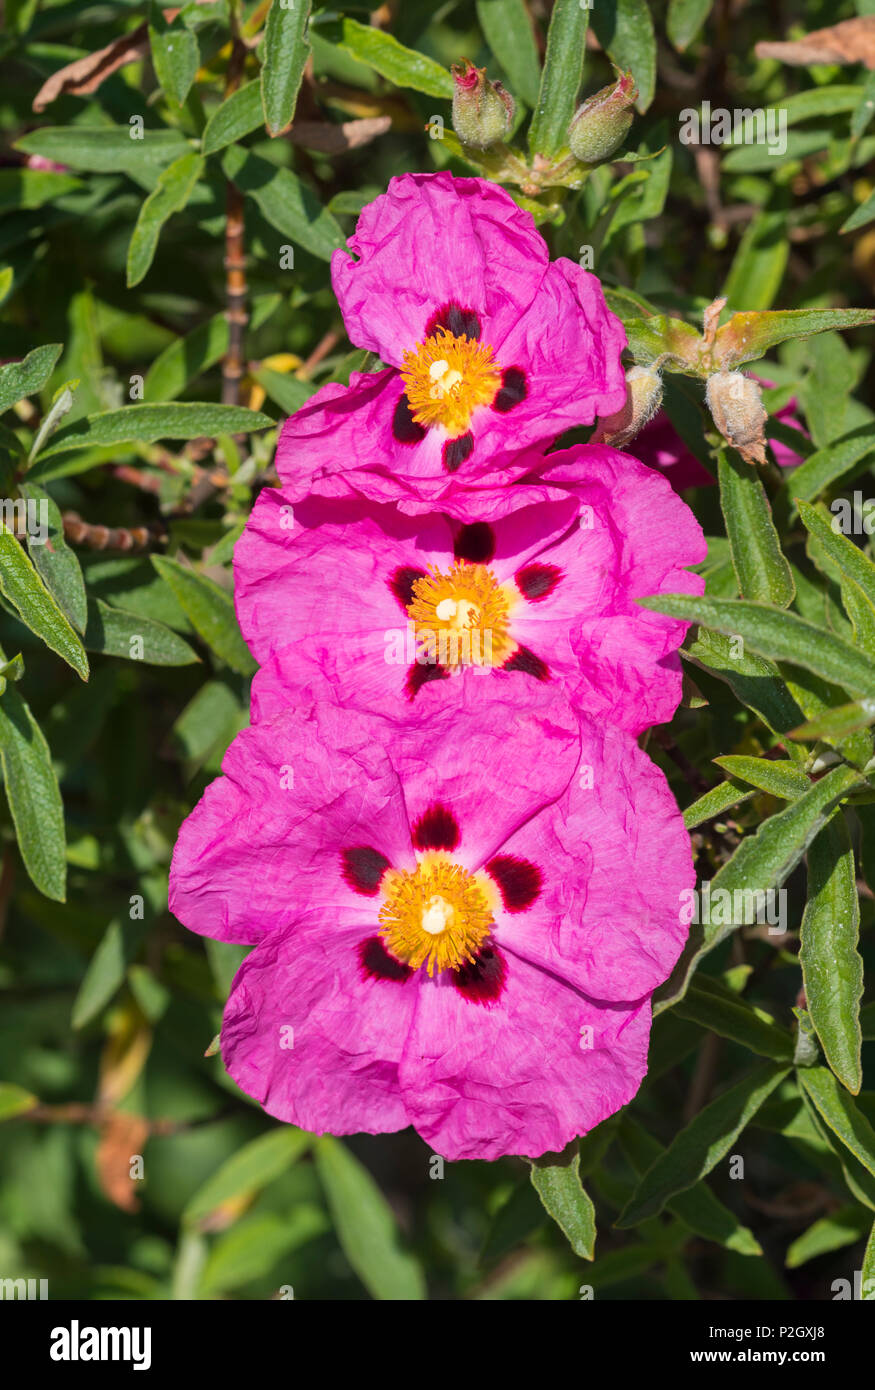 Rock Rose arbustive rose fleurs du genre Cistus, de la famille des Cistacées, en été dans le West Sussex, Angleterre, Royaume-Uni. Ciste ladanifère portrait. Banque D'Images